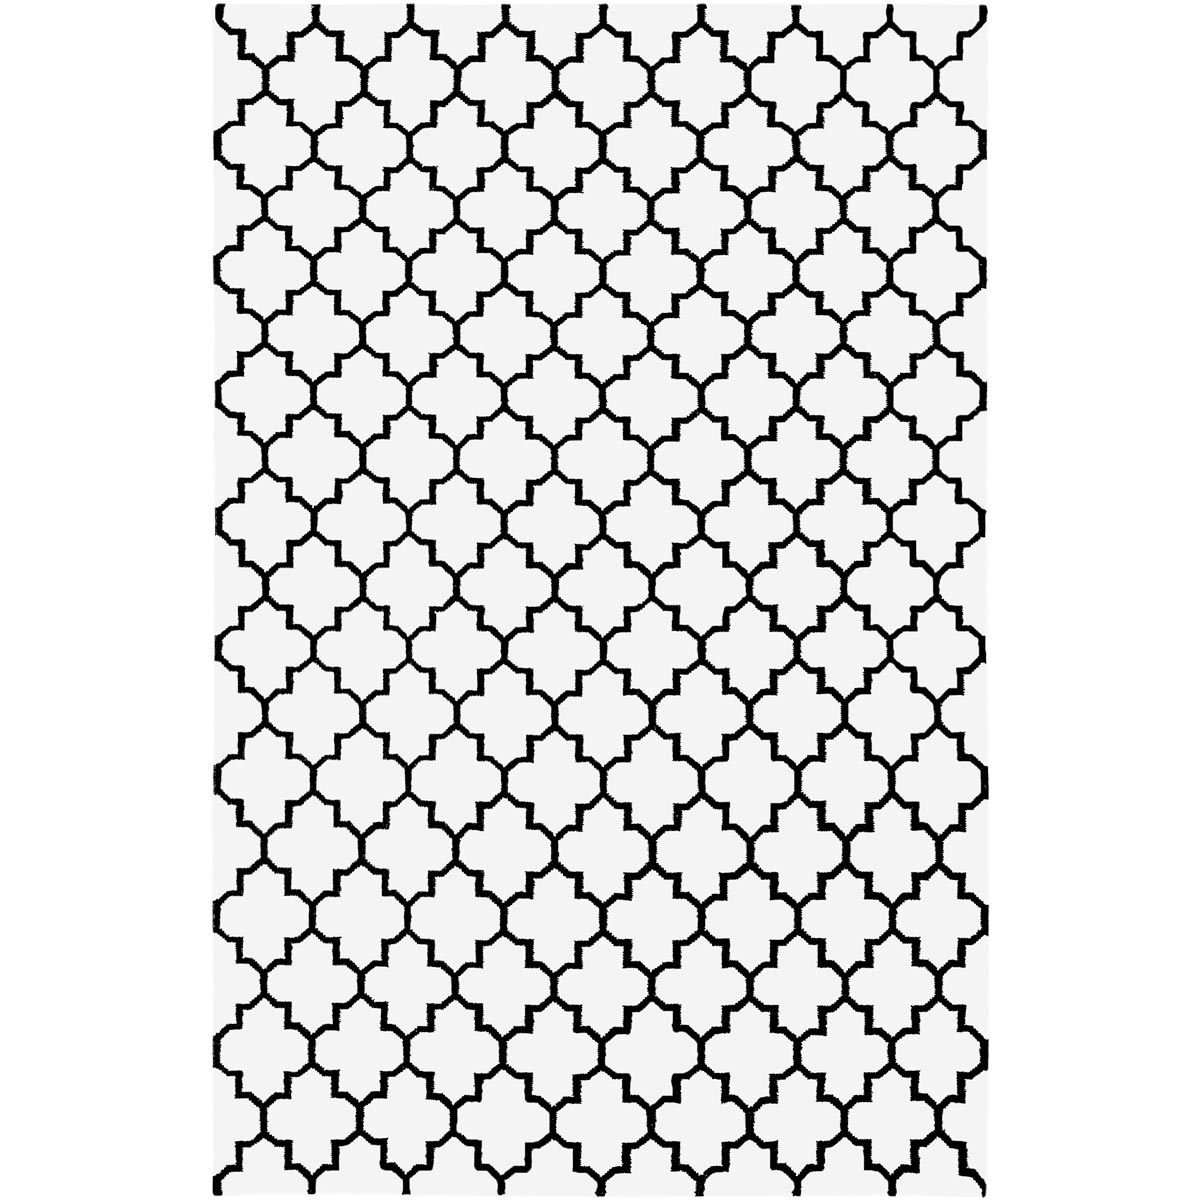 שטיח קילים הדס 07 לבן/שחור | השטיח האדום